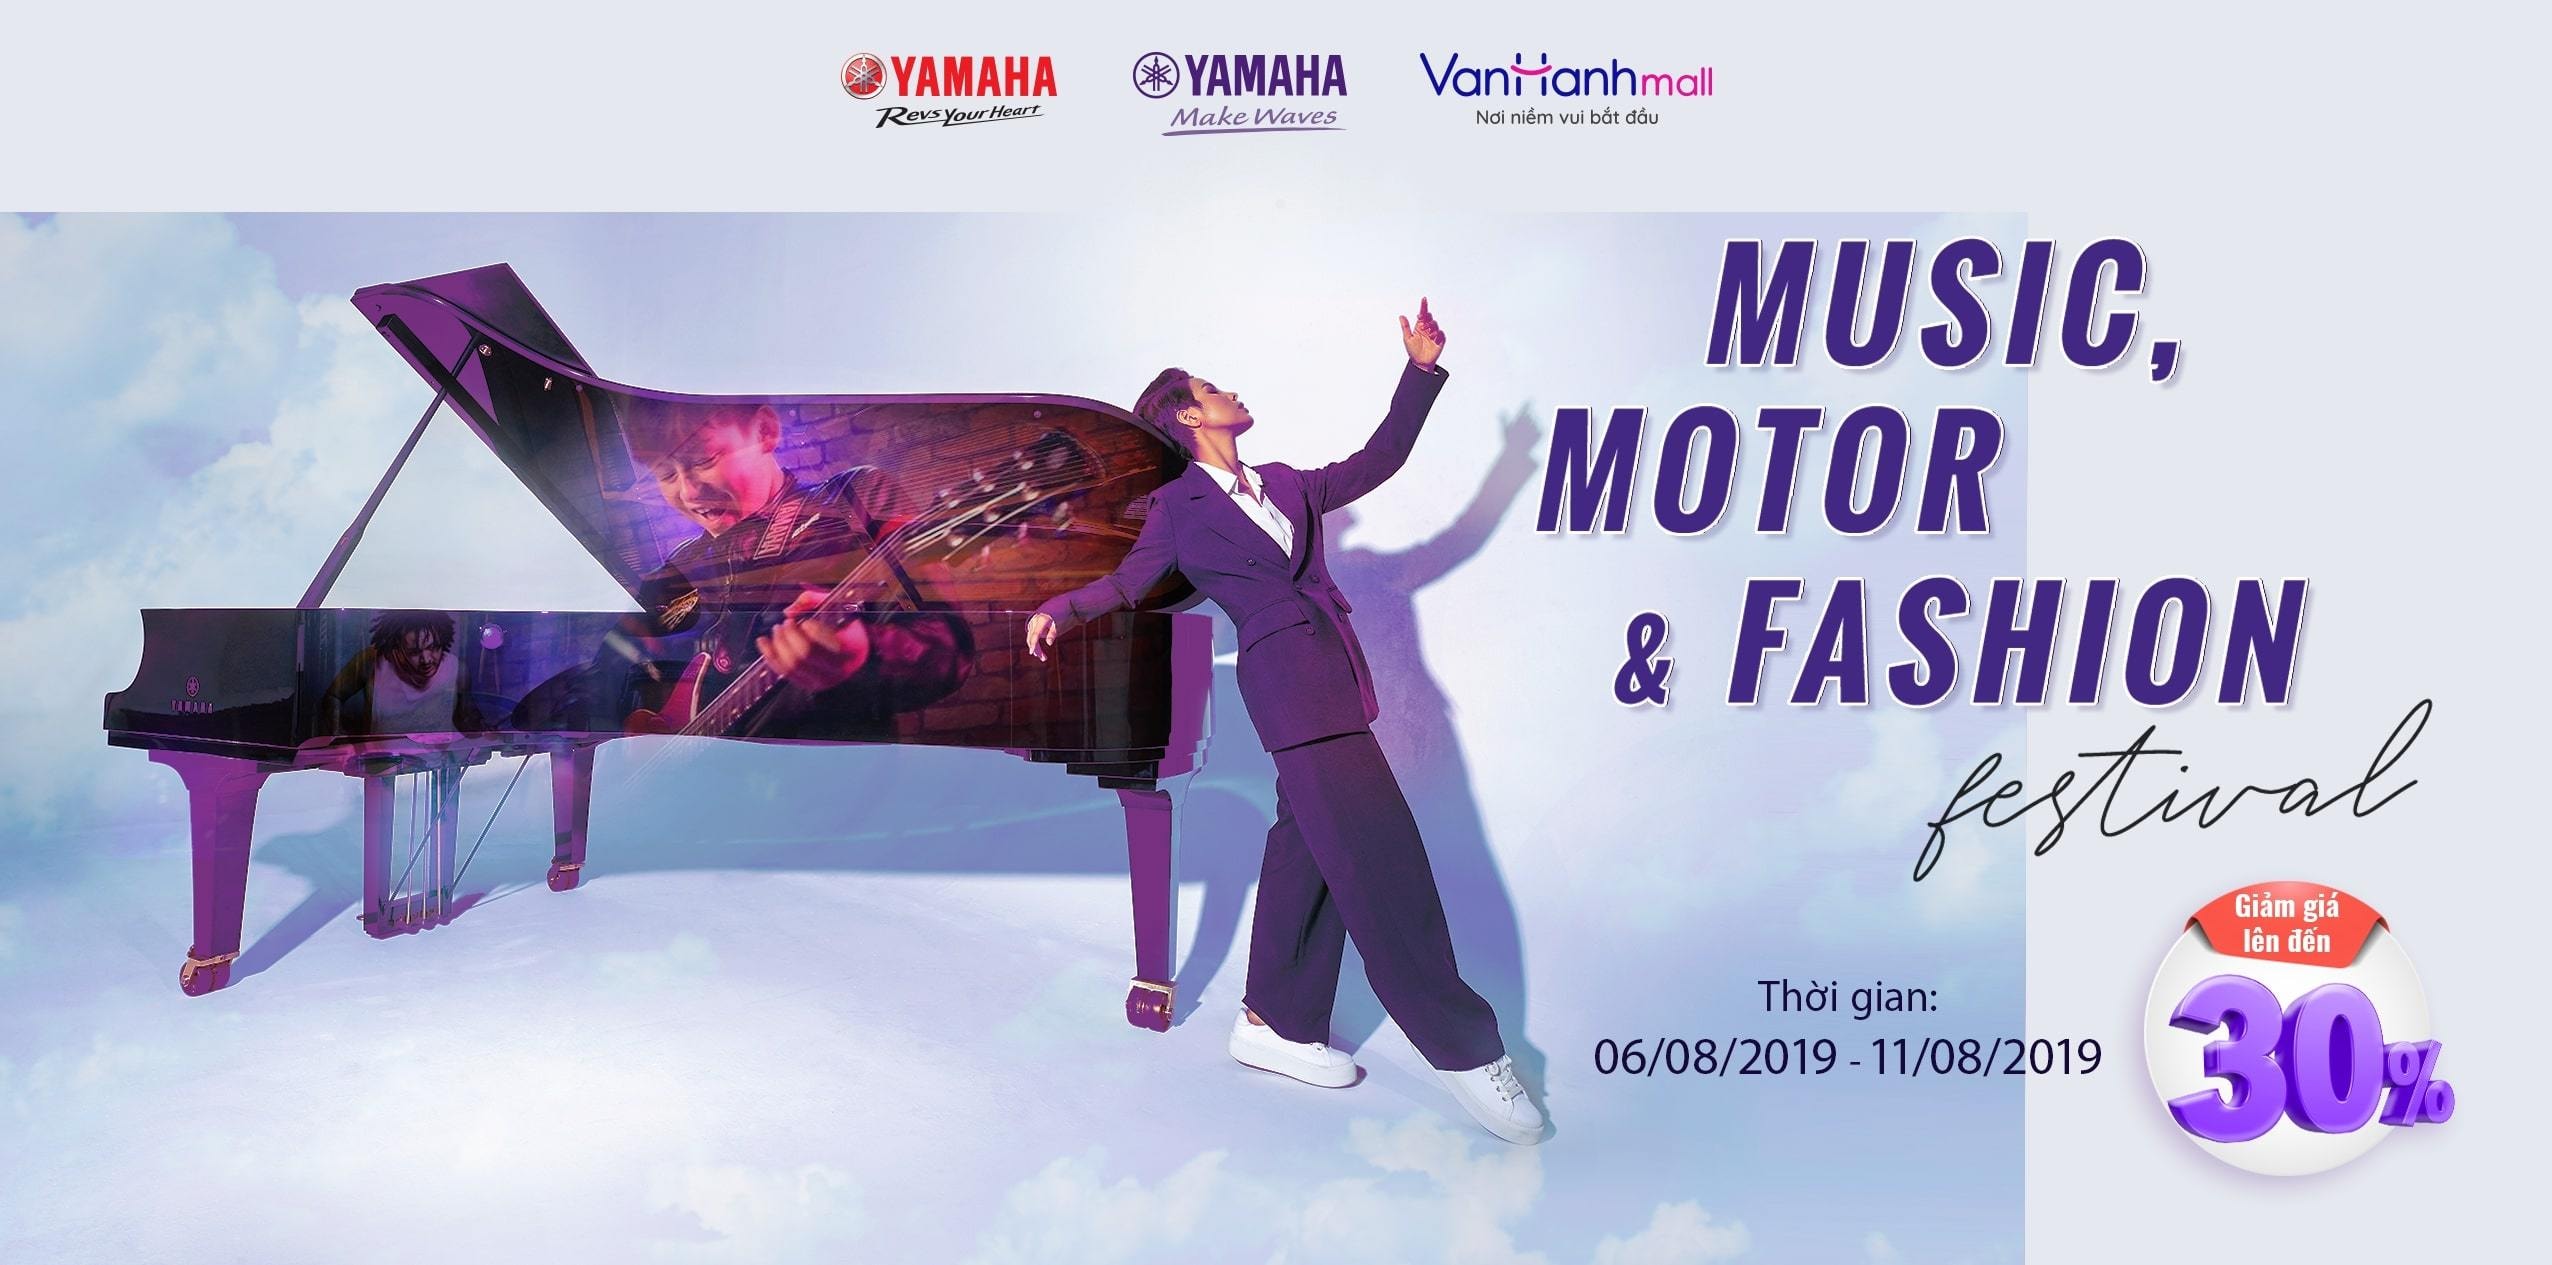 Lễ hội “Music, Motor & Fashion” khép lại thành công rực rỡ | Yamaha